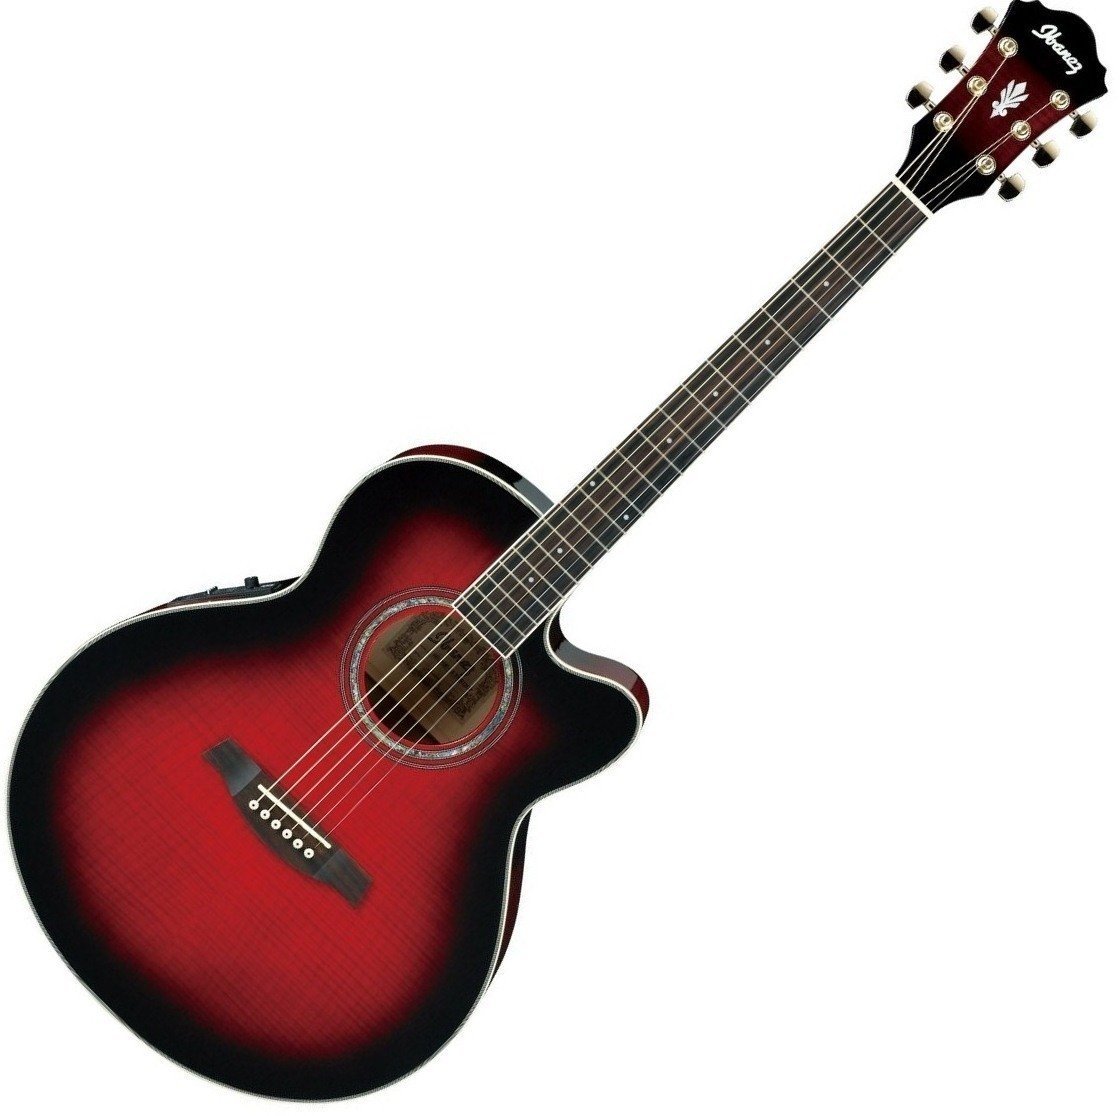 Ηλεκτροακουστική Κιθάρα Ibanez AEL 20E Transparent Red Sunburst